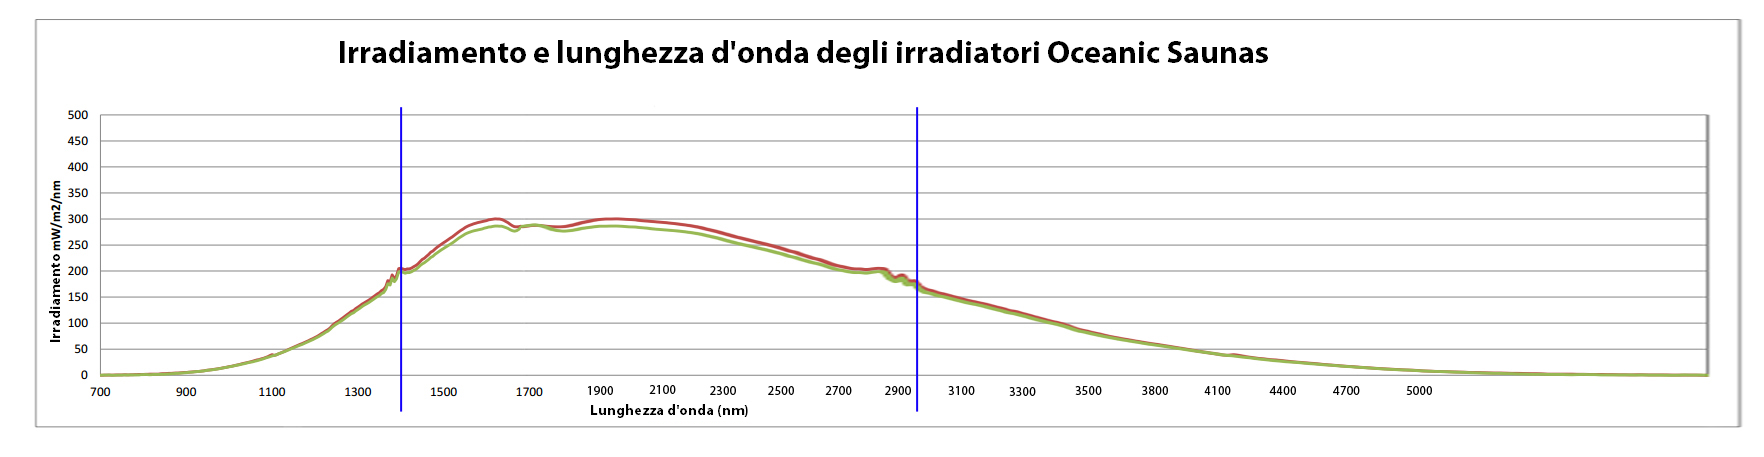 Grafico di irradiamento e lunghezza d'onda degli irradiatori ad infrarossi Oceanic Saunas